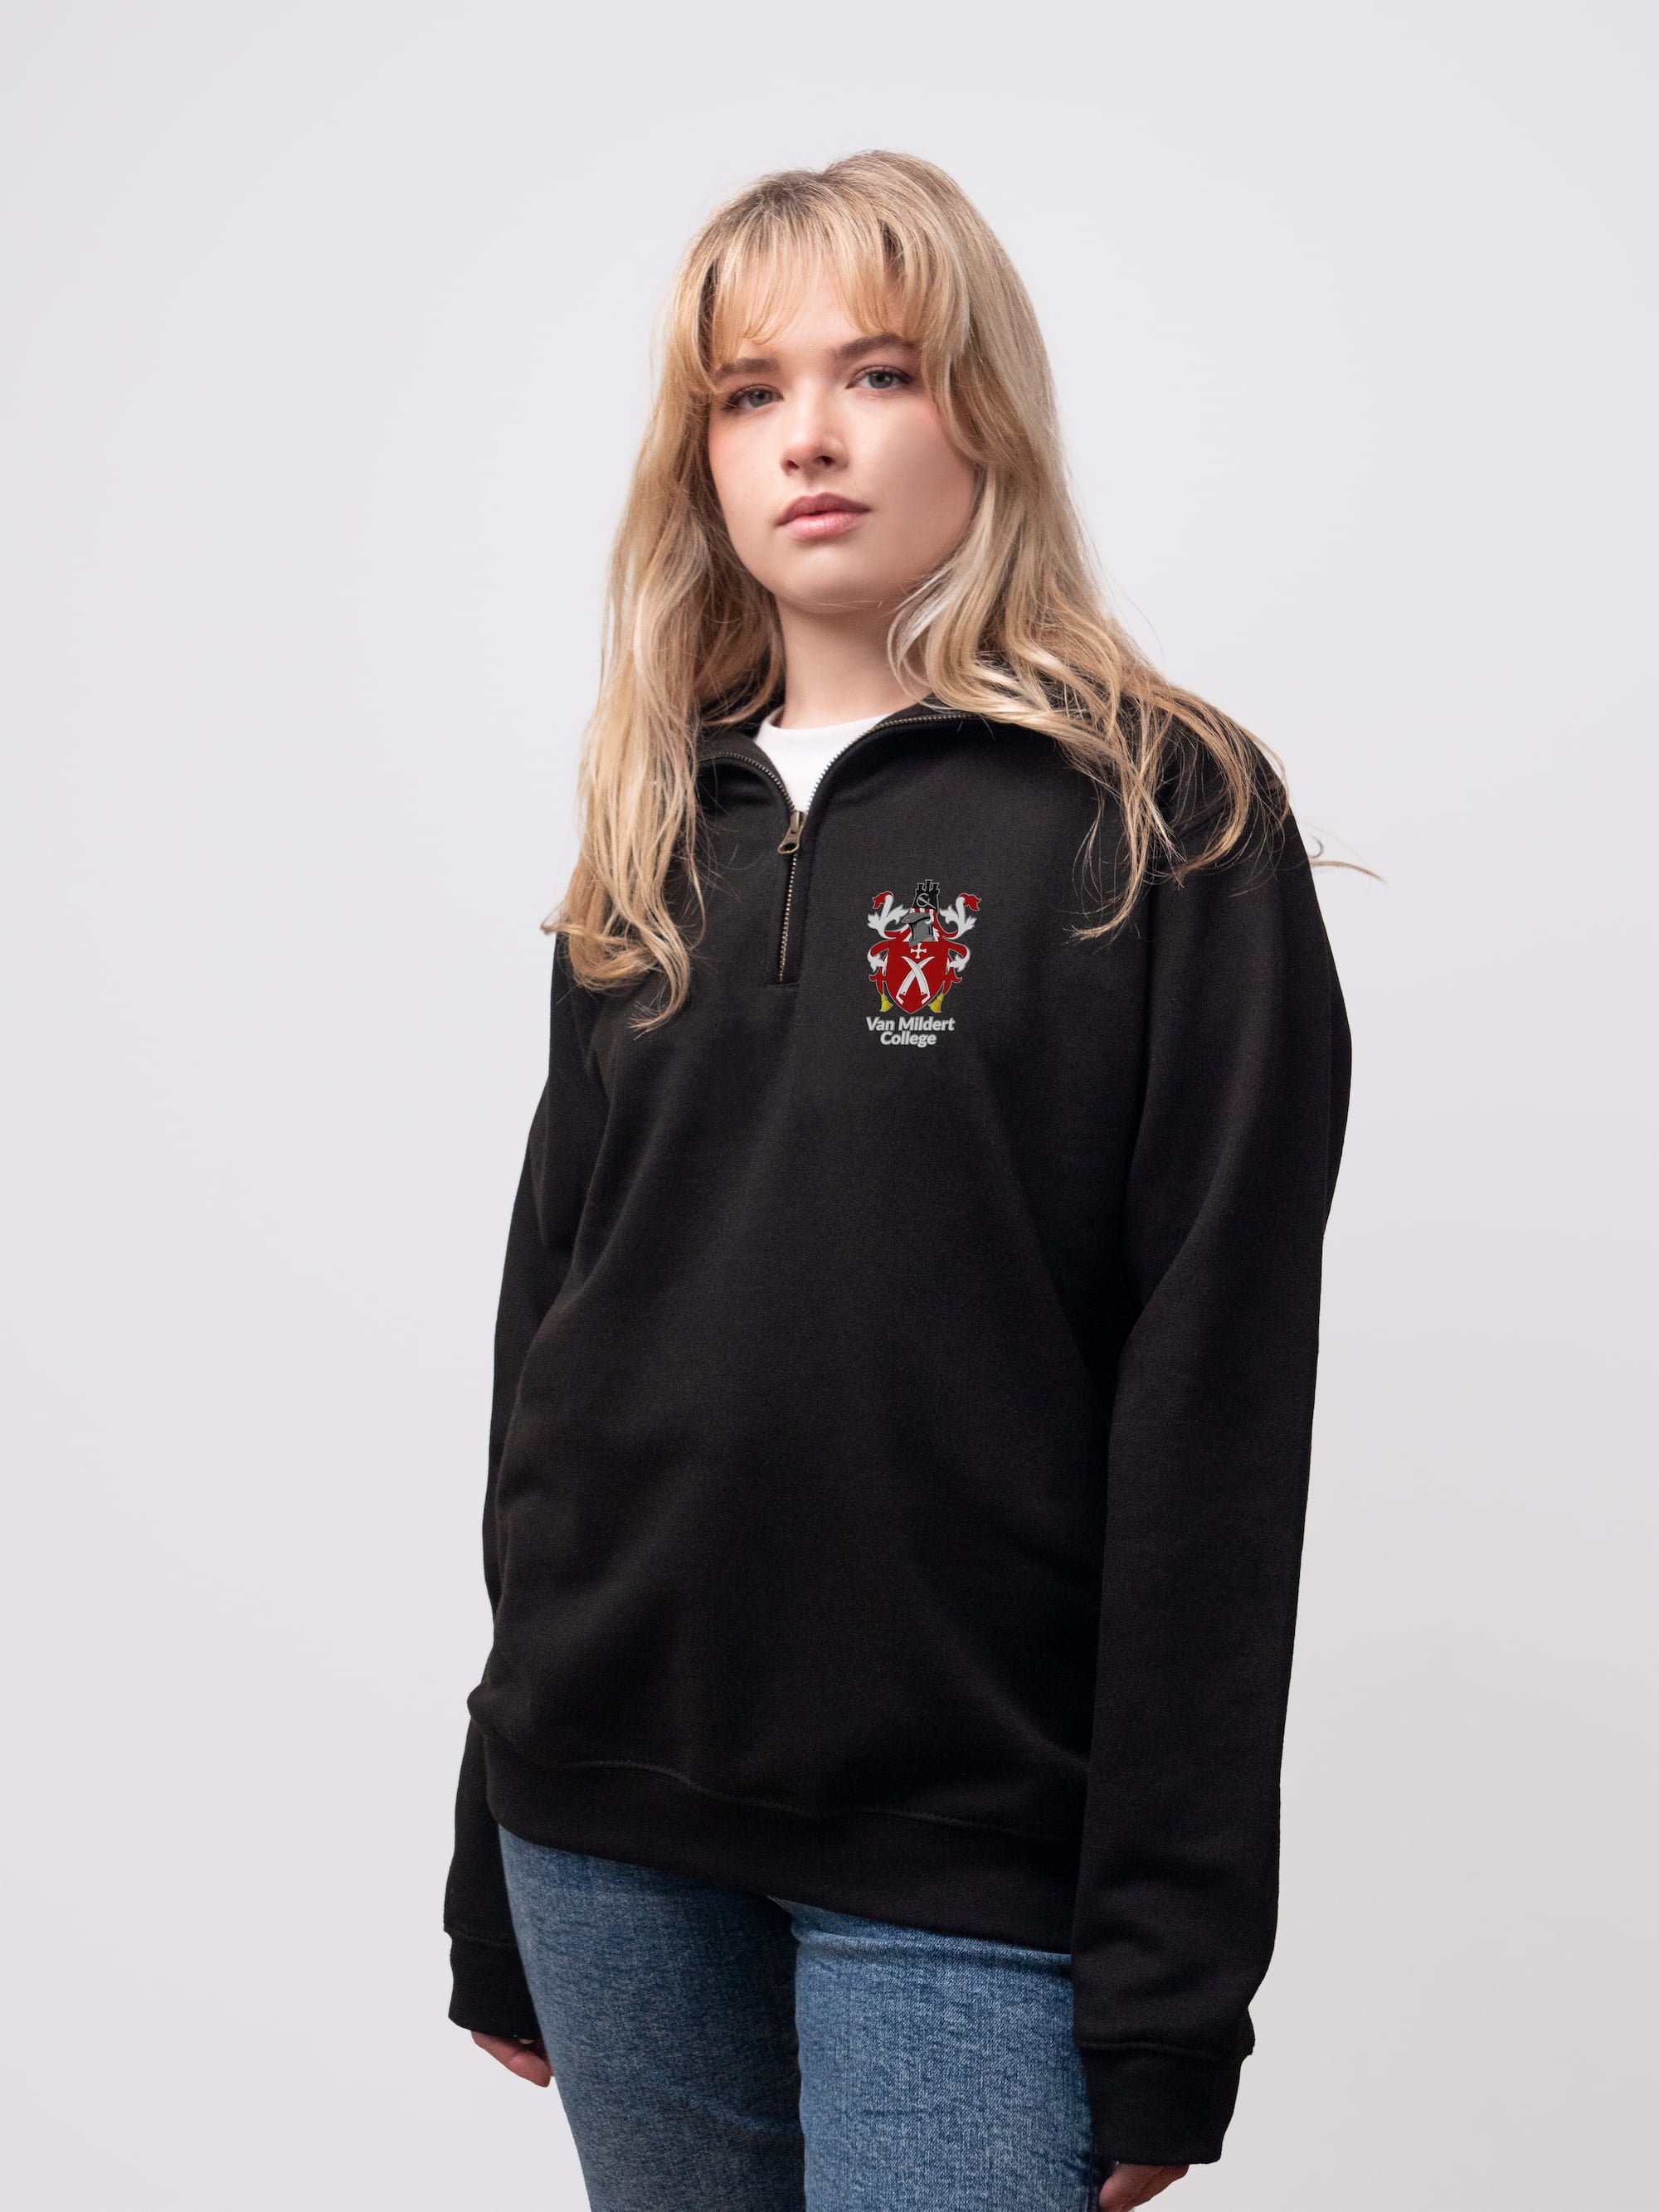 Van Mildert student wearing a black 1/4 zip sweatshirt 